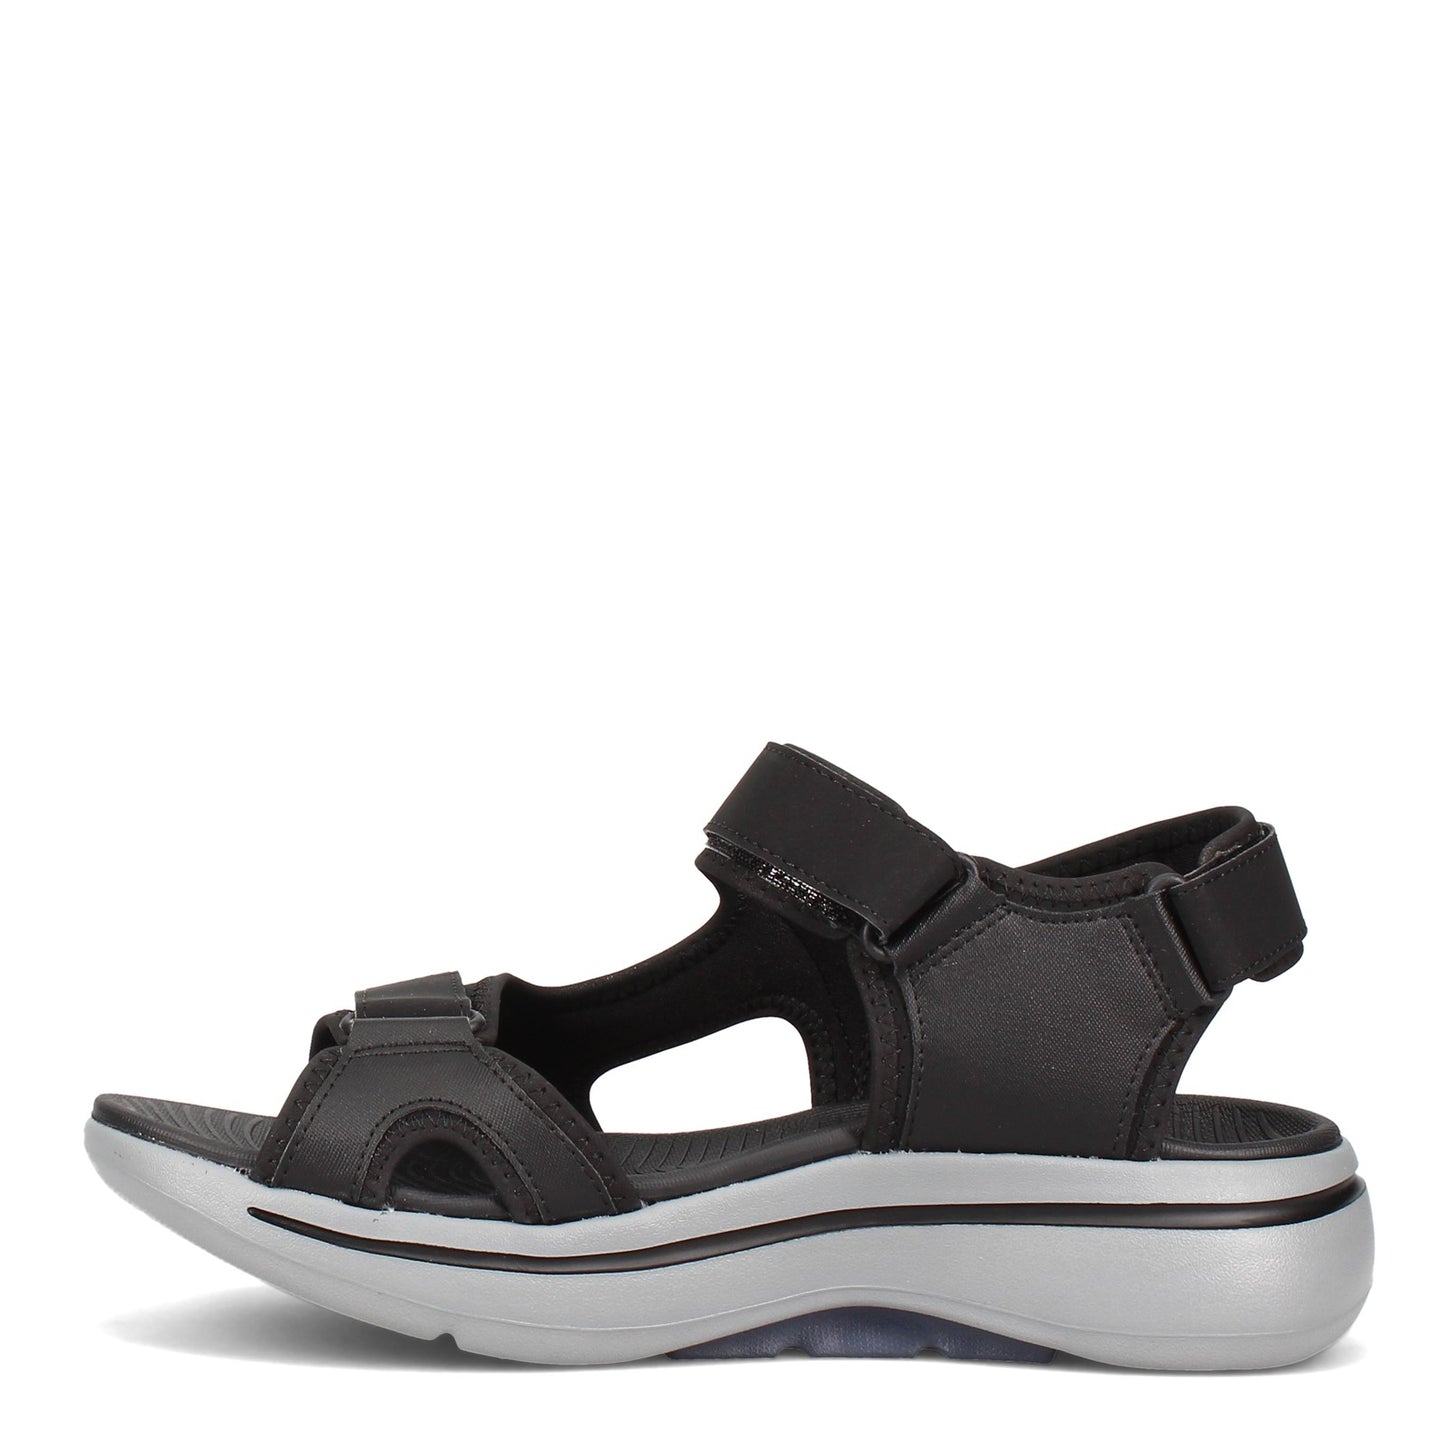 Peltz Shoes  Men's Skechers GOwalk Arch Fit - Mission Sandal BLACK NAVY 229021-BKNV